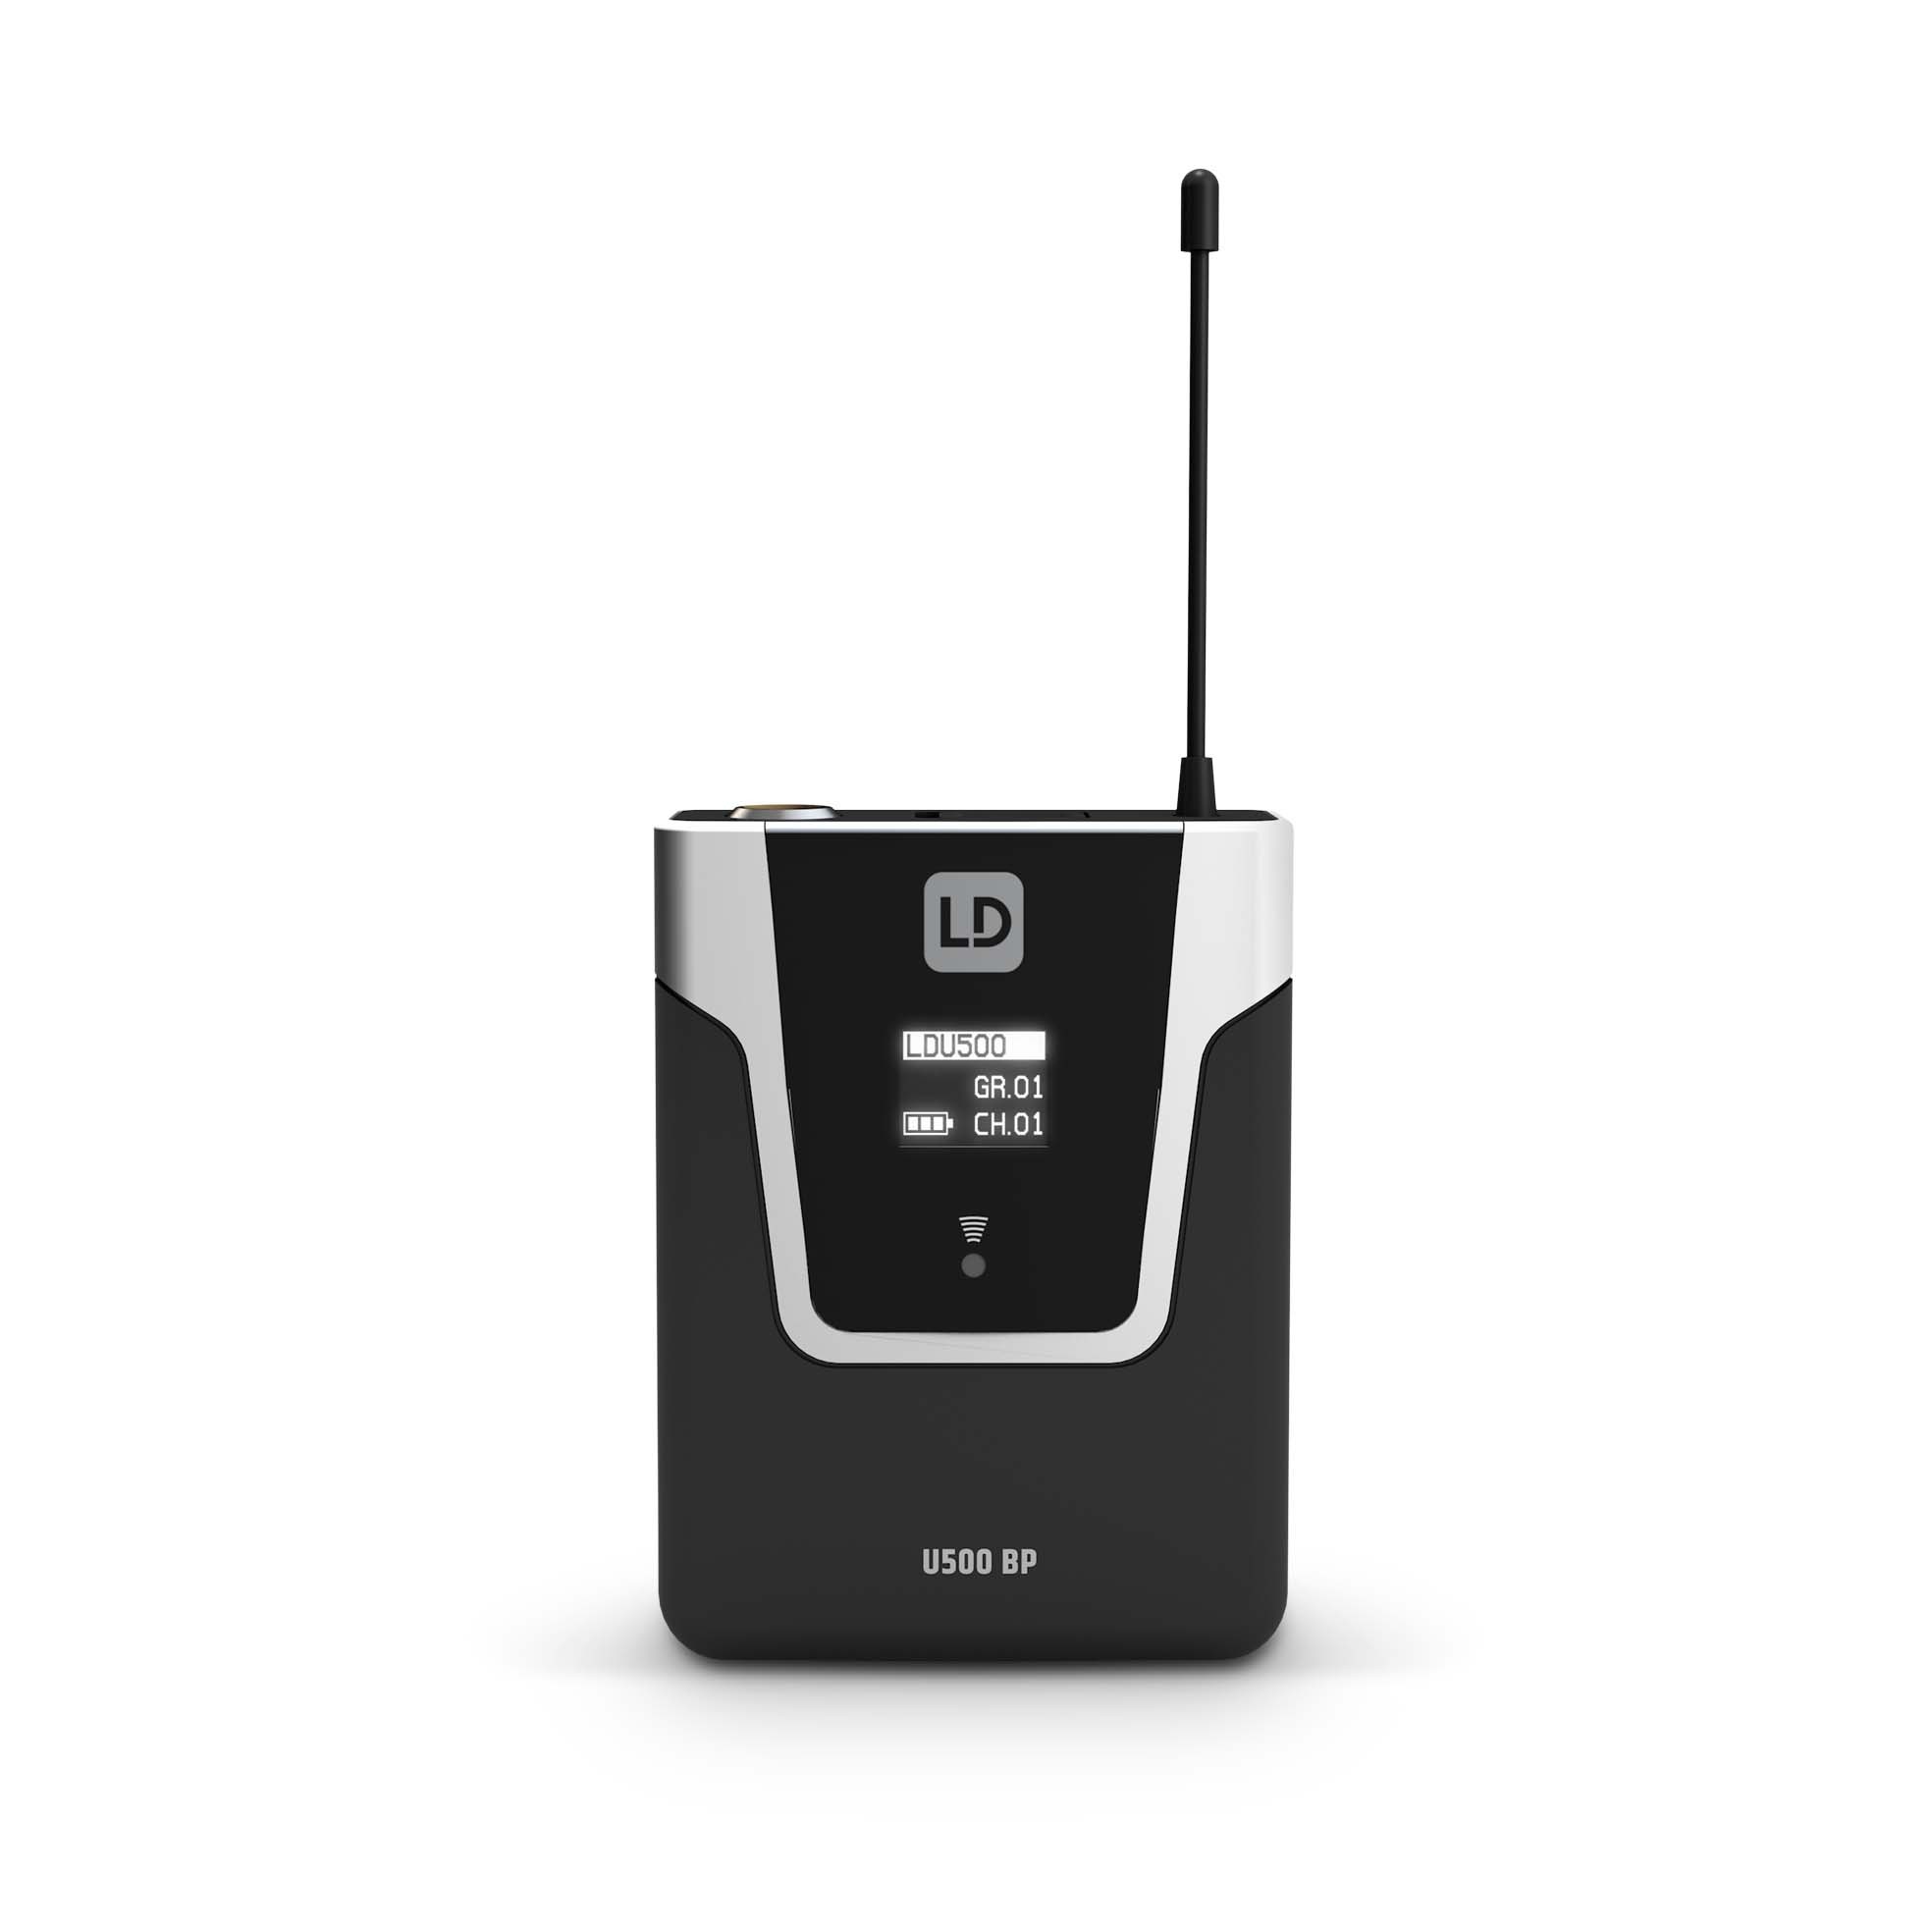 Ld Systems U508 Bph 2 - Wireless Sender-Empfänger System - Variation 5